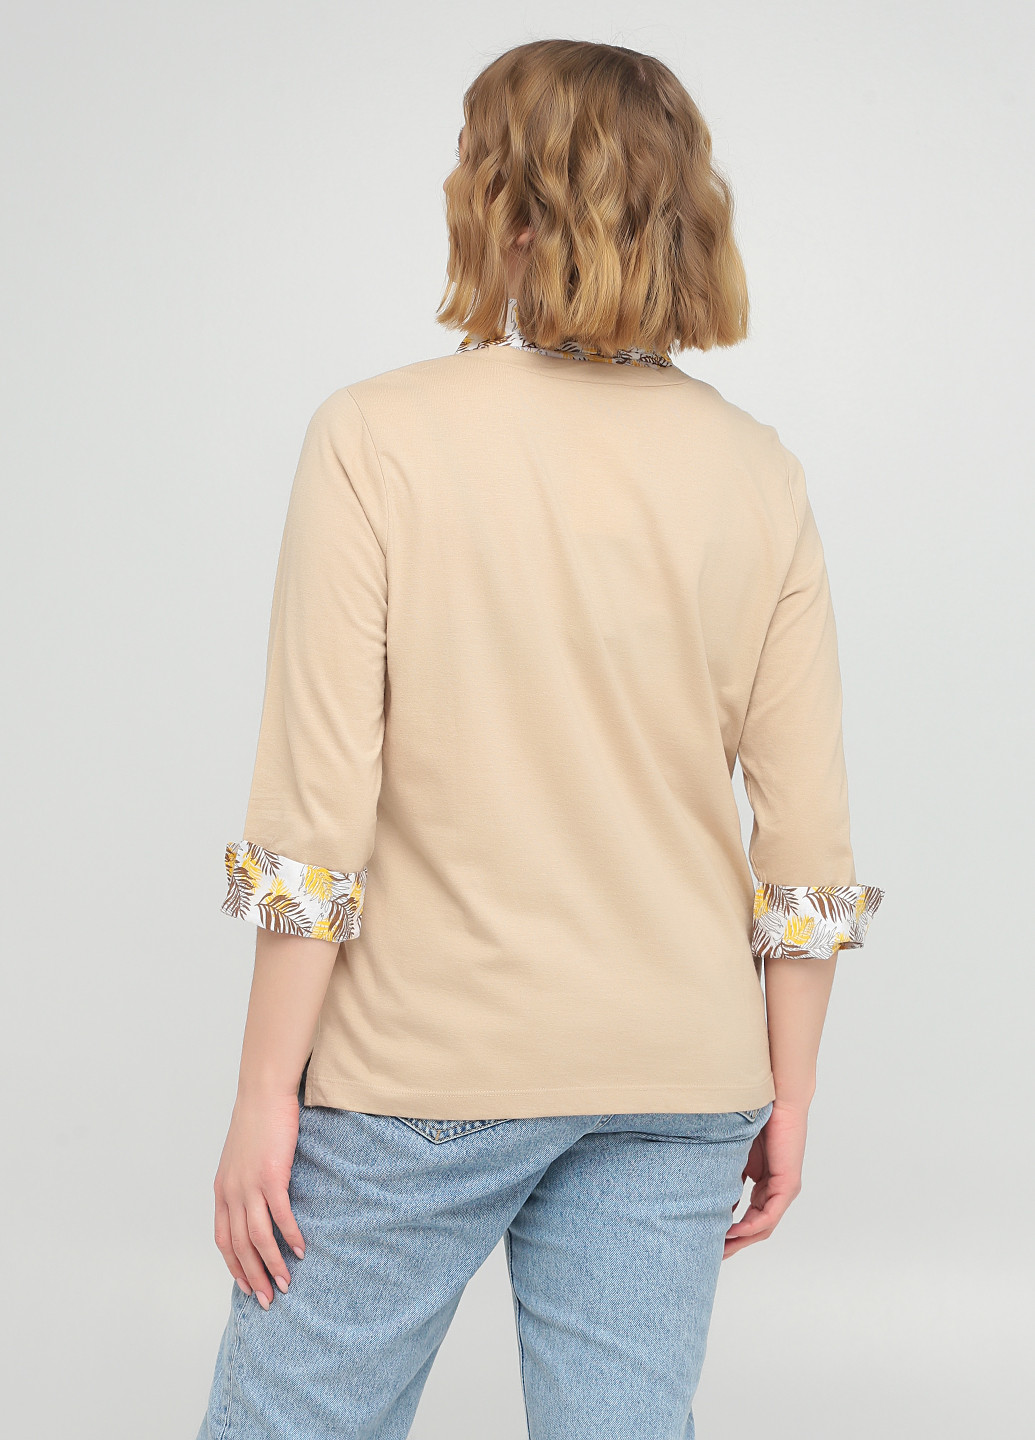 Бежевая женская футболка-поло Pardon с абстрактным узором